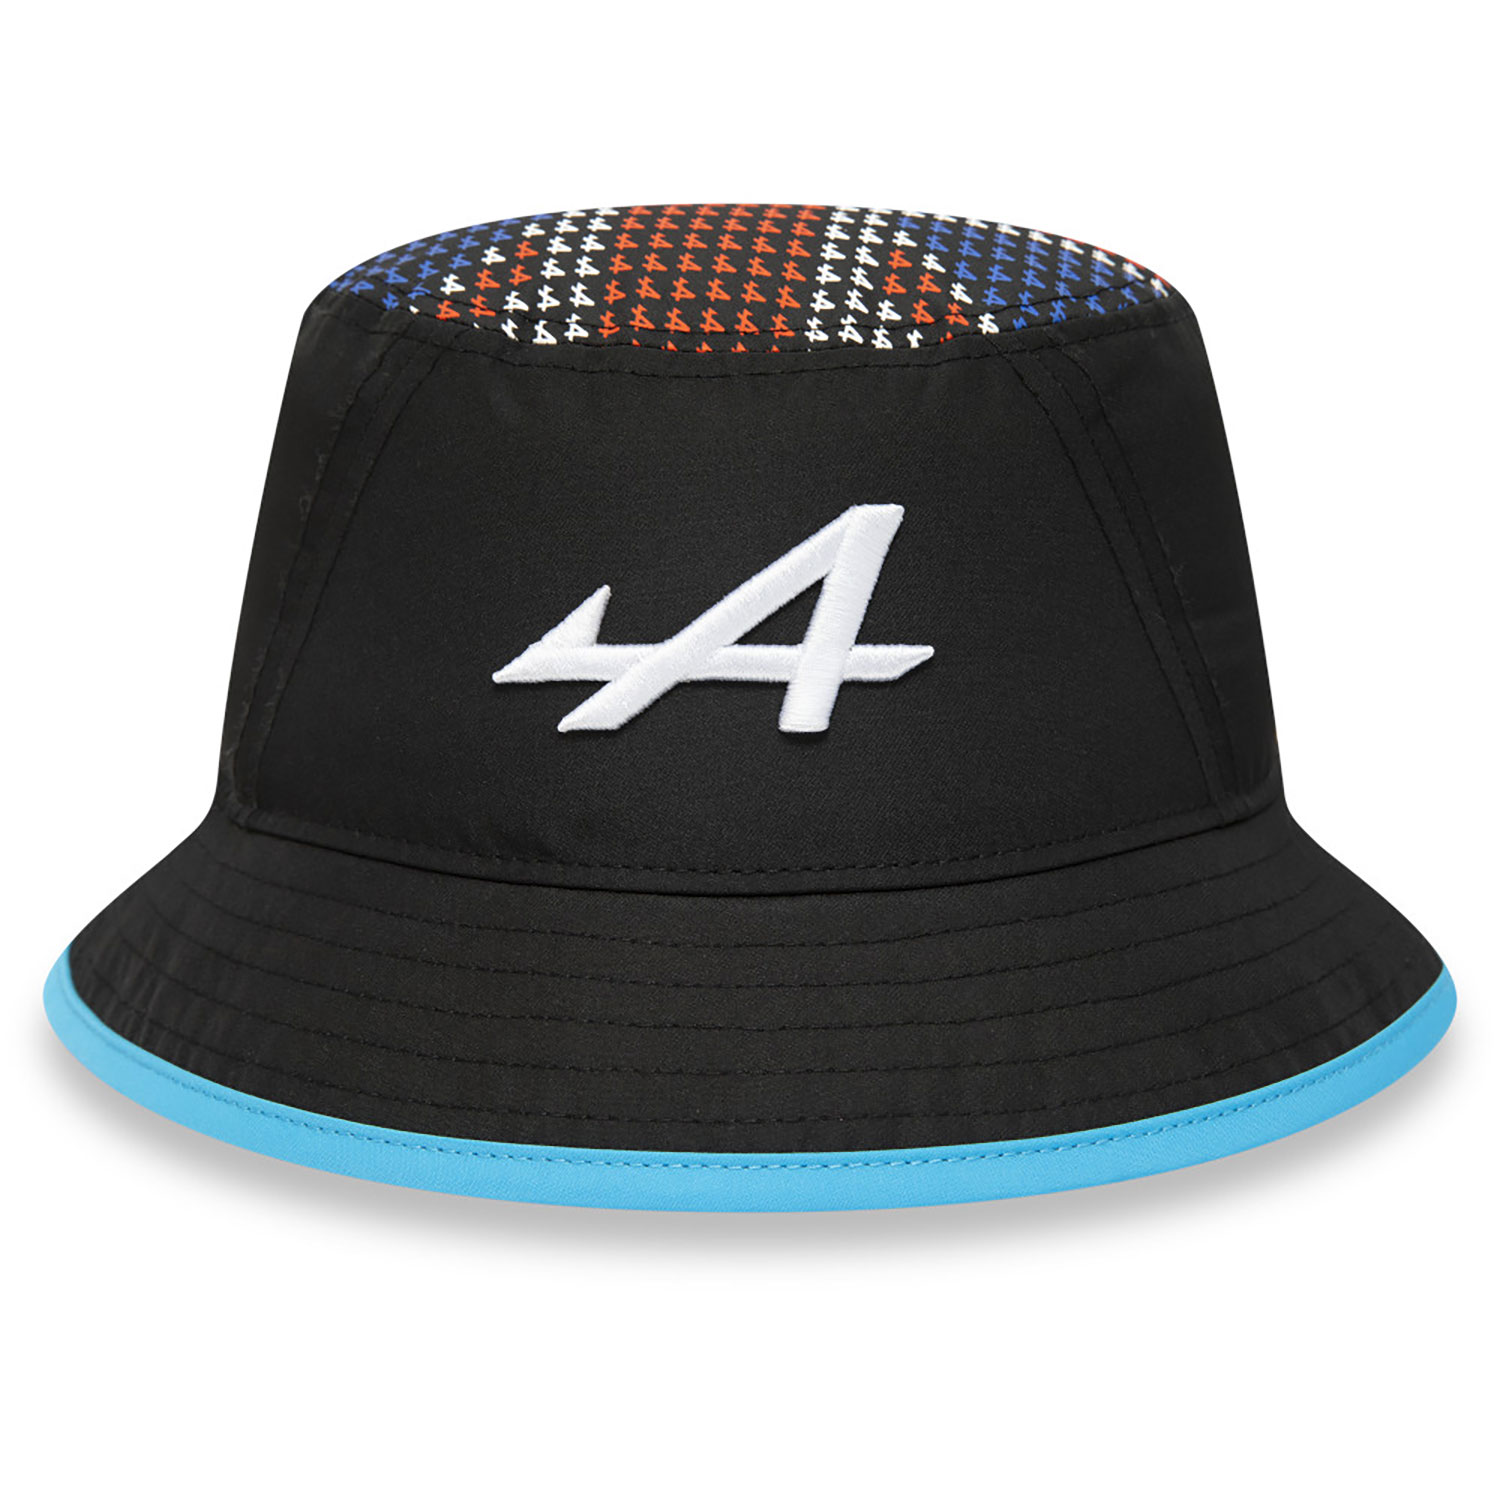 Alpine Silverstone Race Special Black Bucket Hat